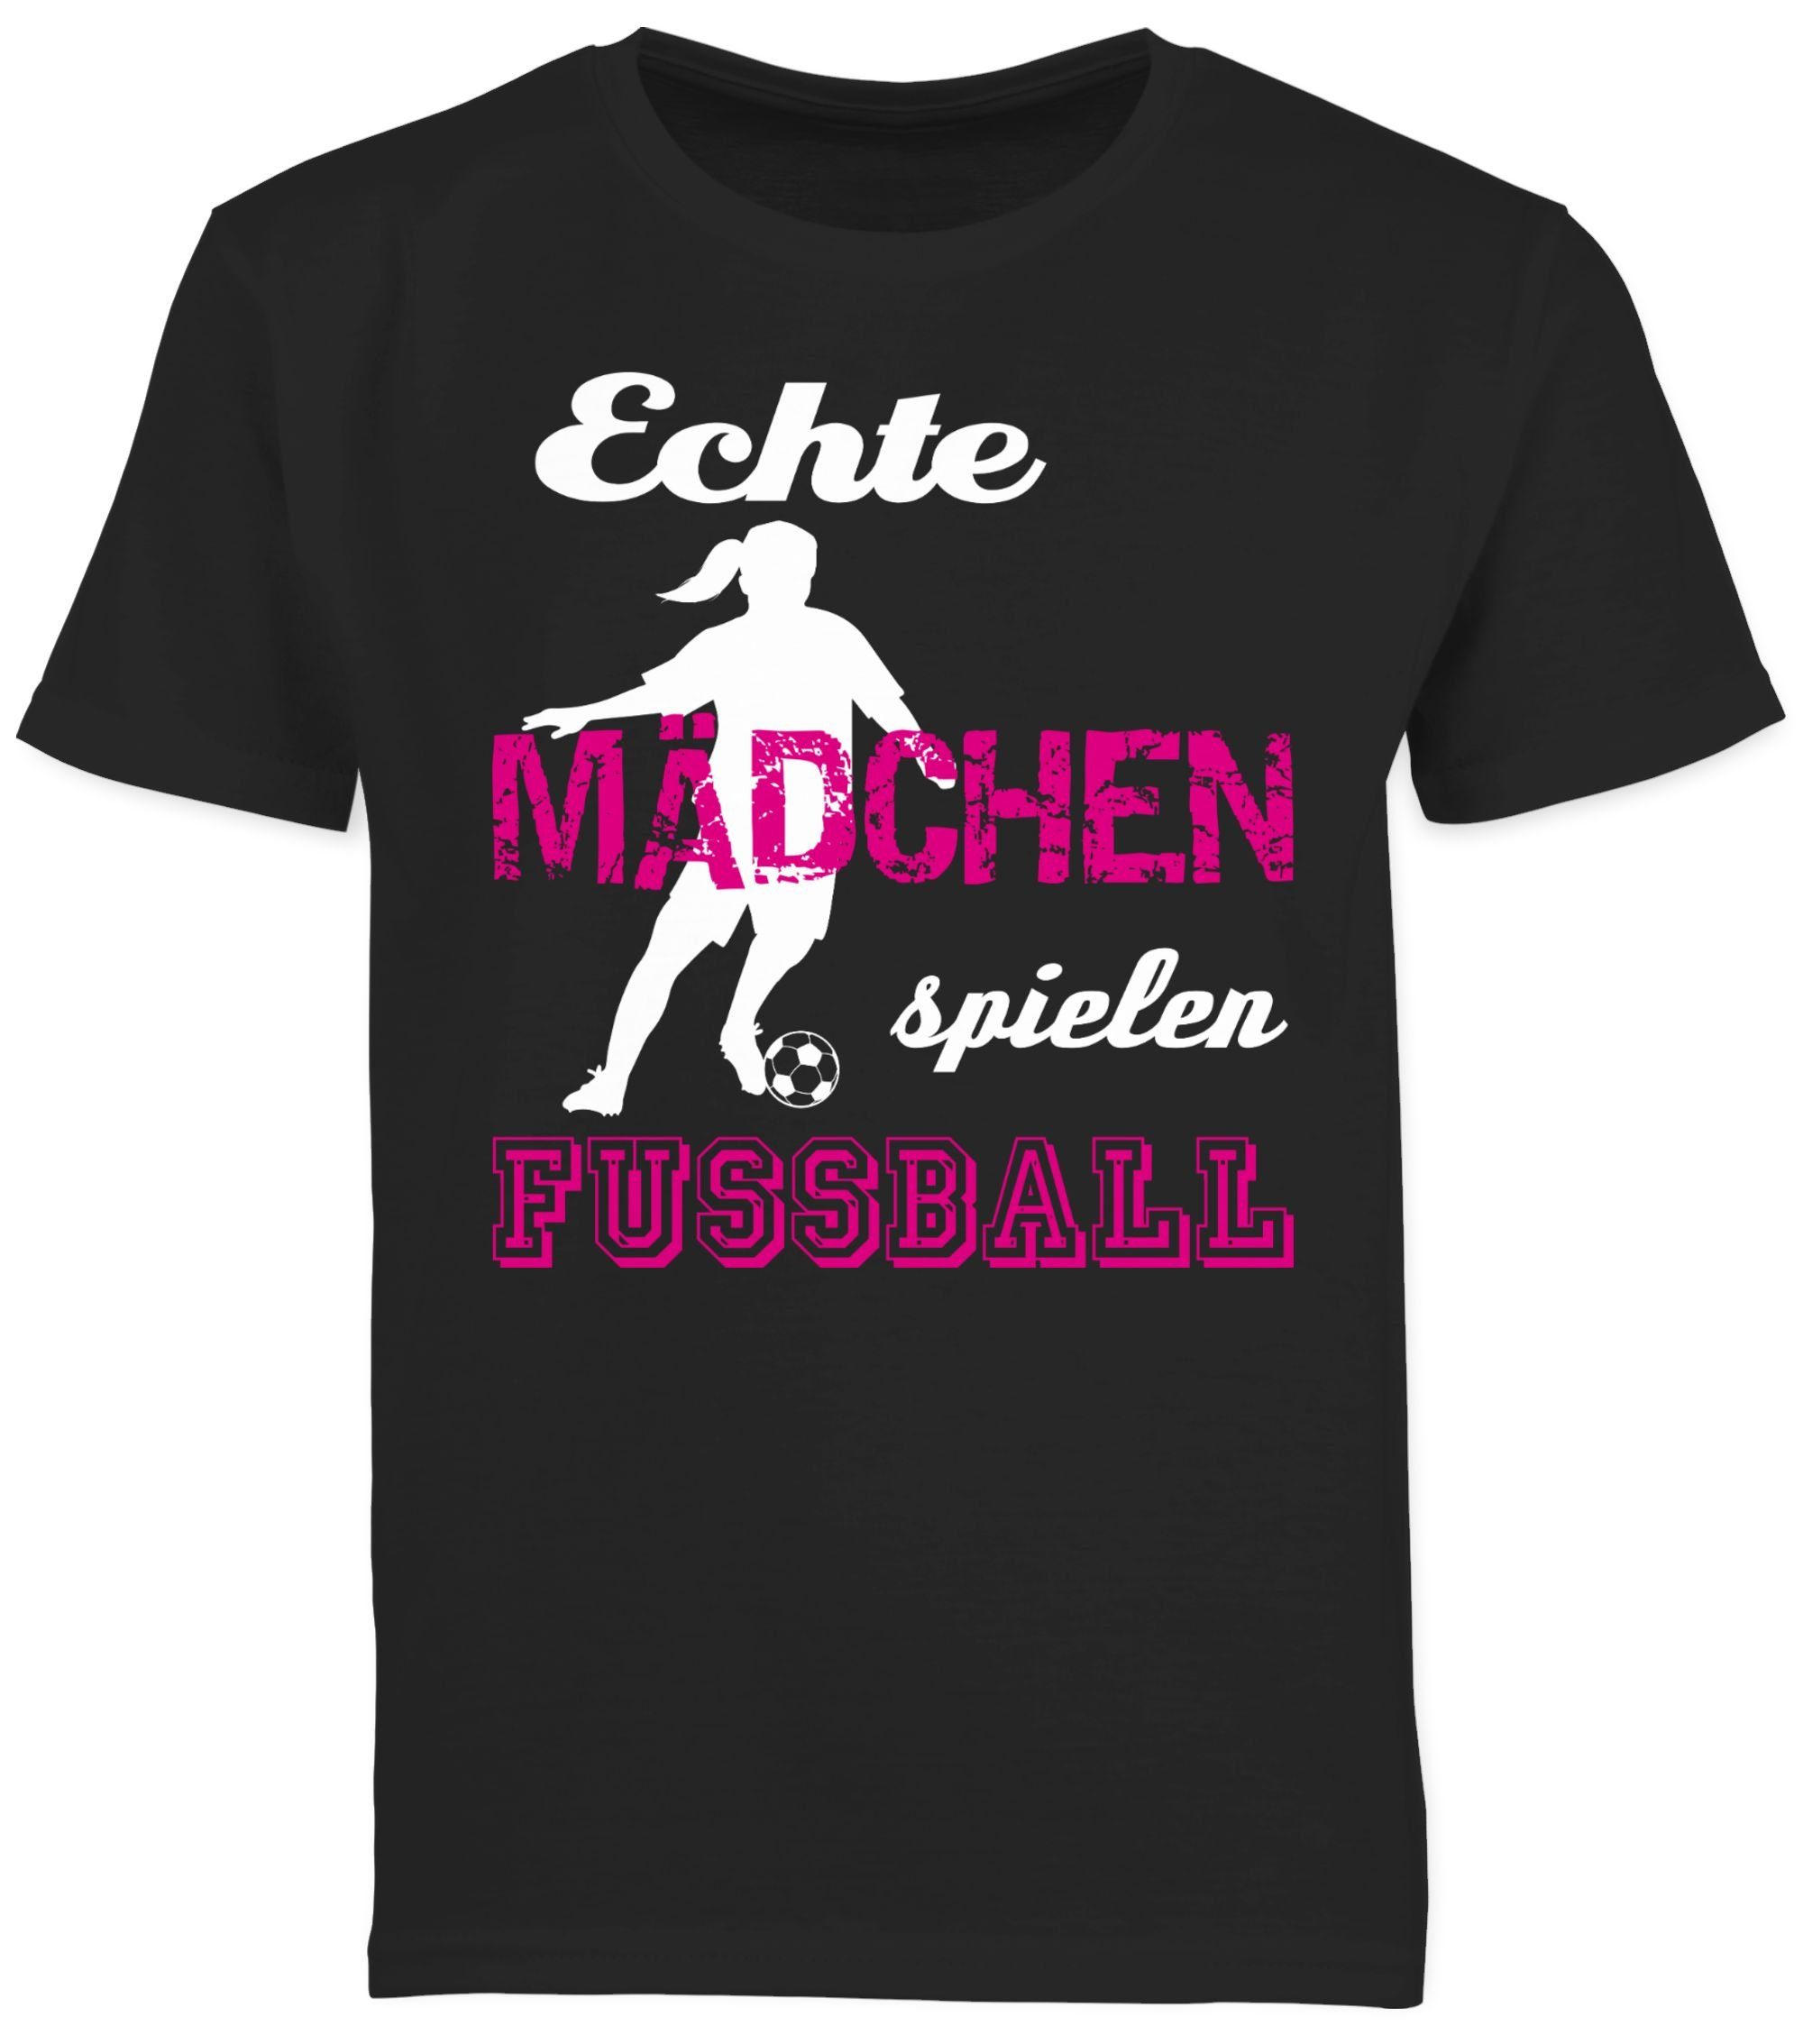 Shirtracer T-Shirt Echte Mädchen spielen Fußball Kinder Sport Kleidung 2 Schwarz